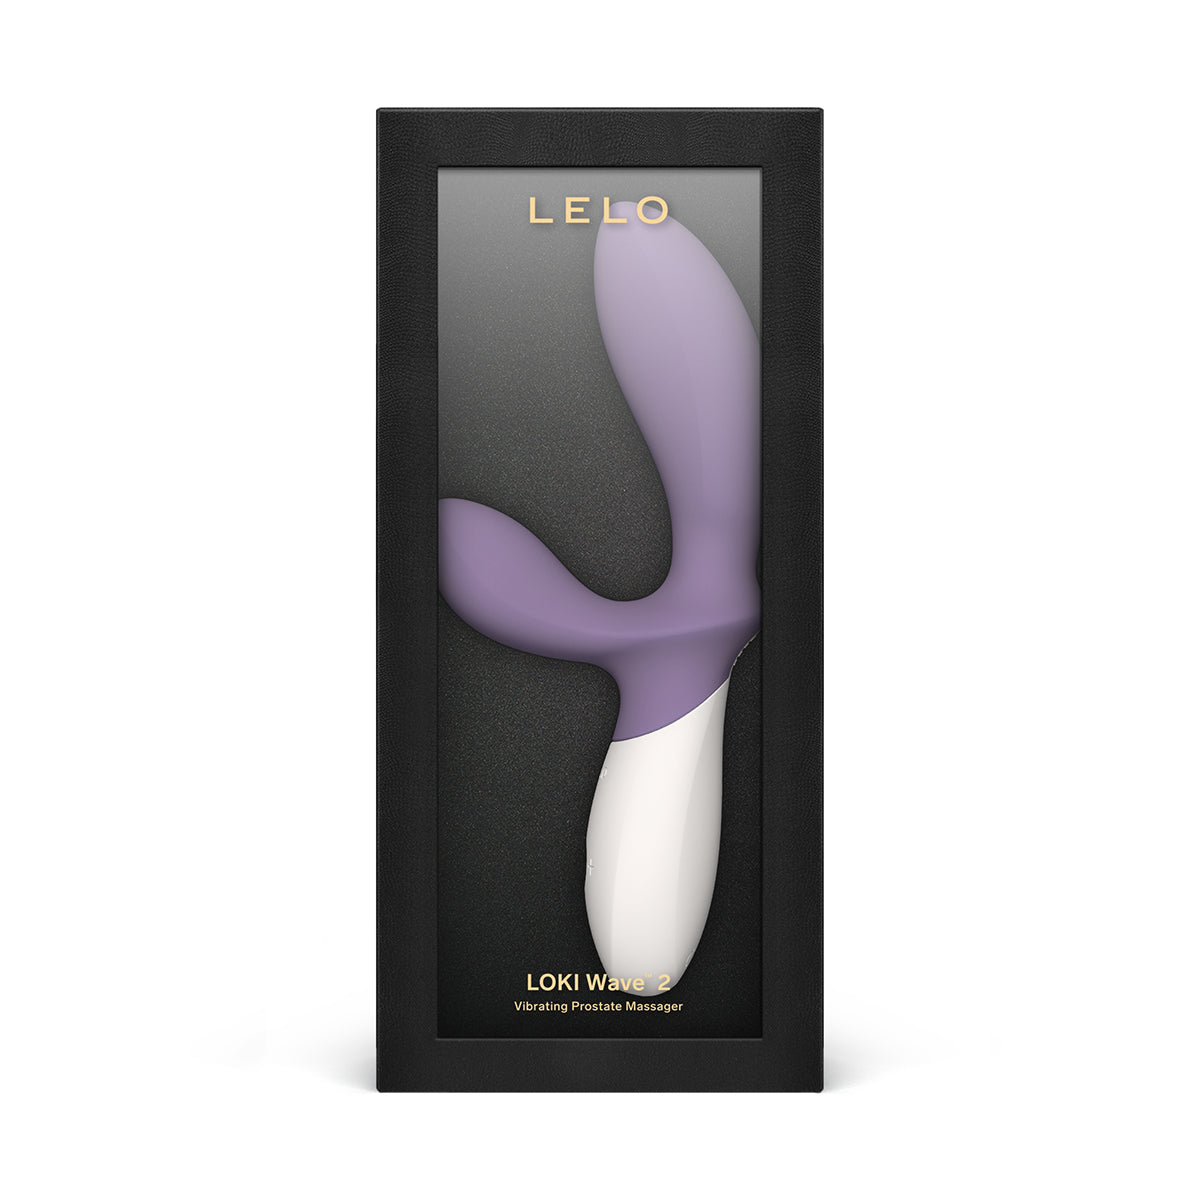 LELO Intimacy Devices LELO Loki Wave 2 - Violet Dusk